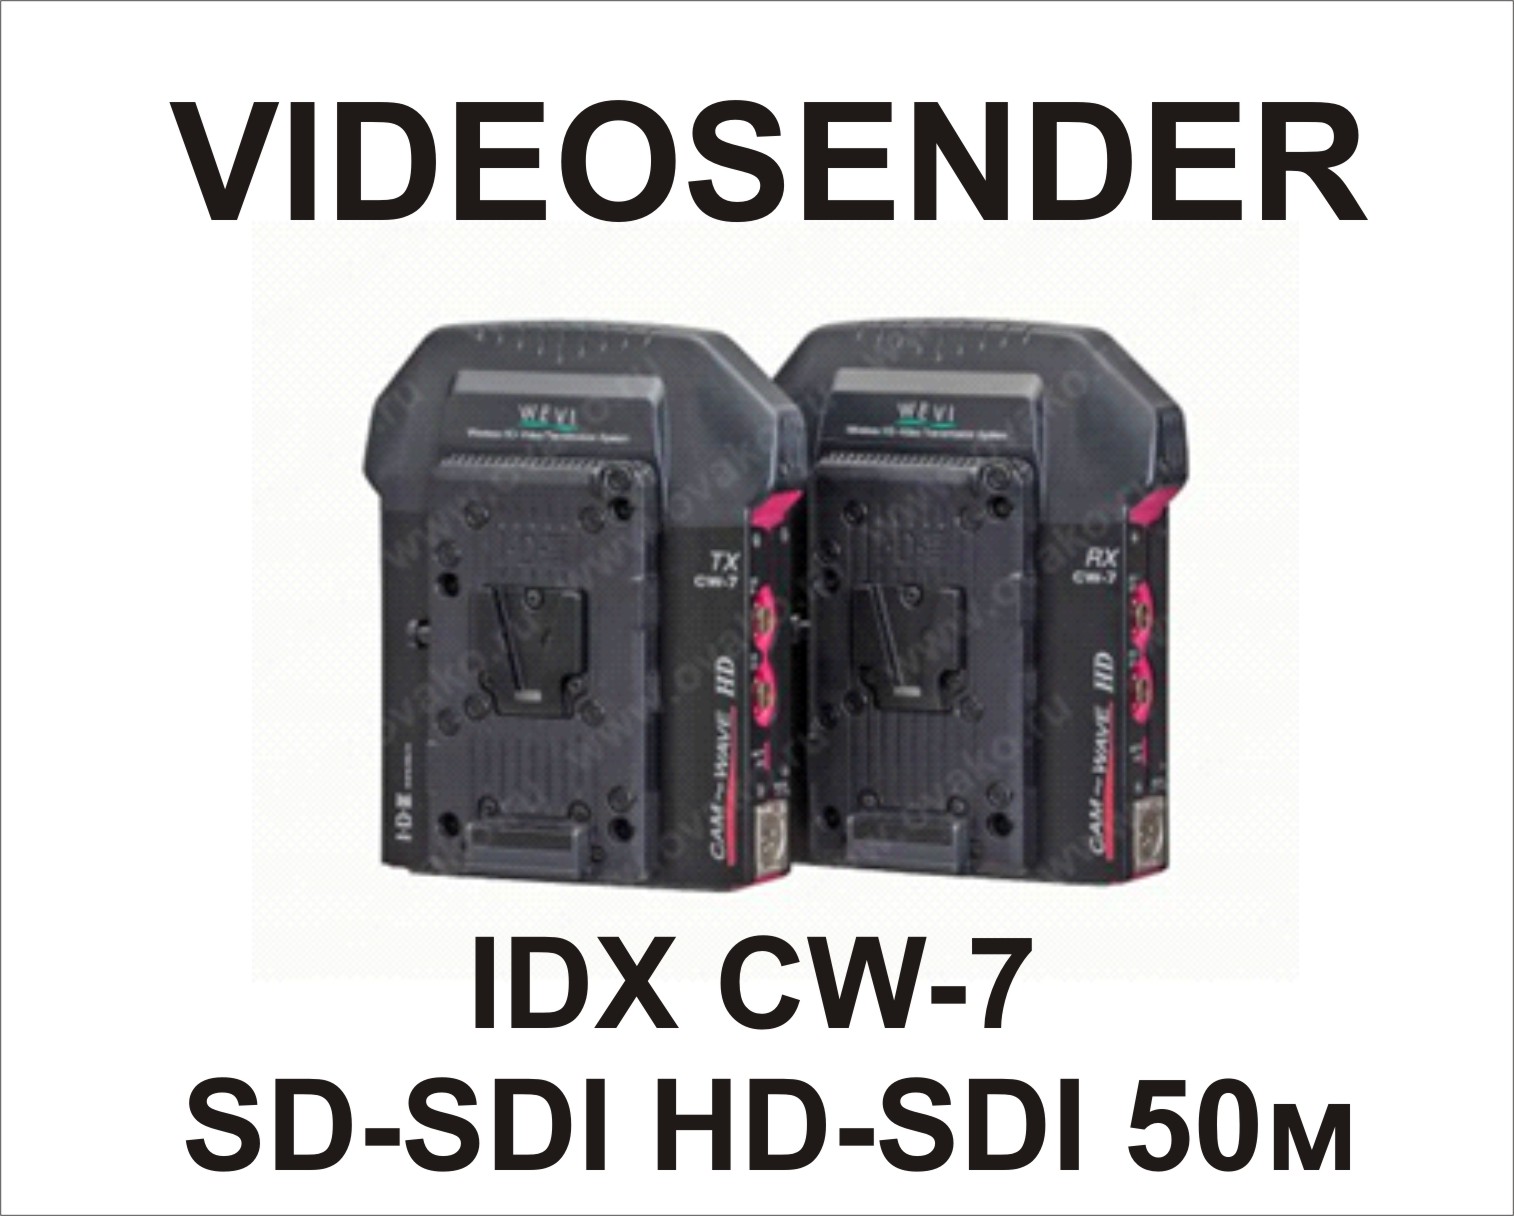 BAN videosender IDX